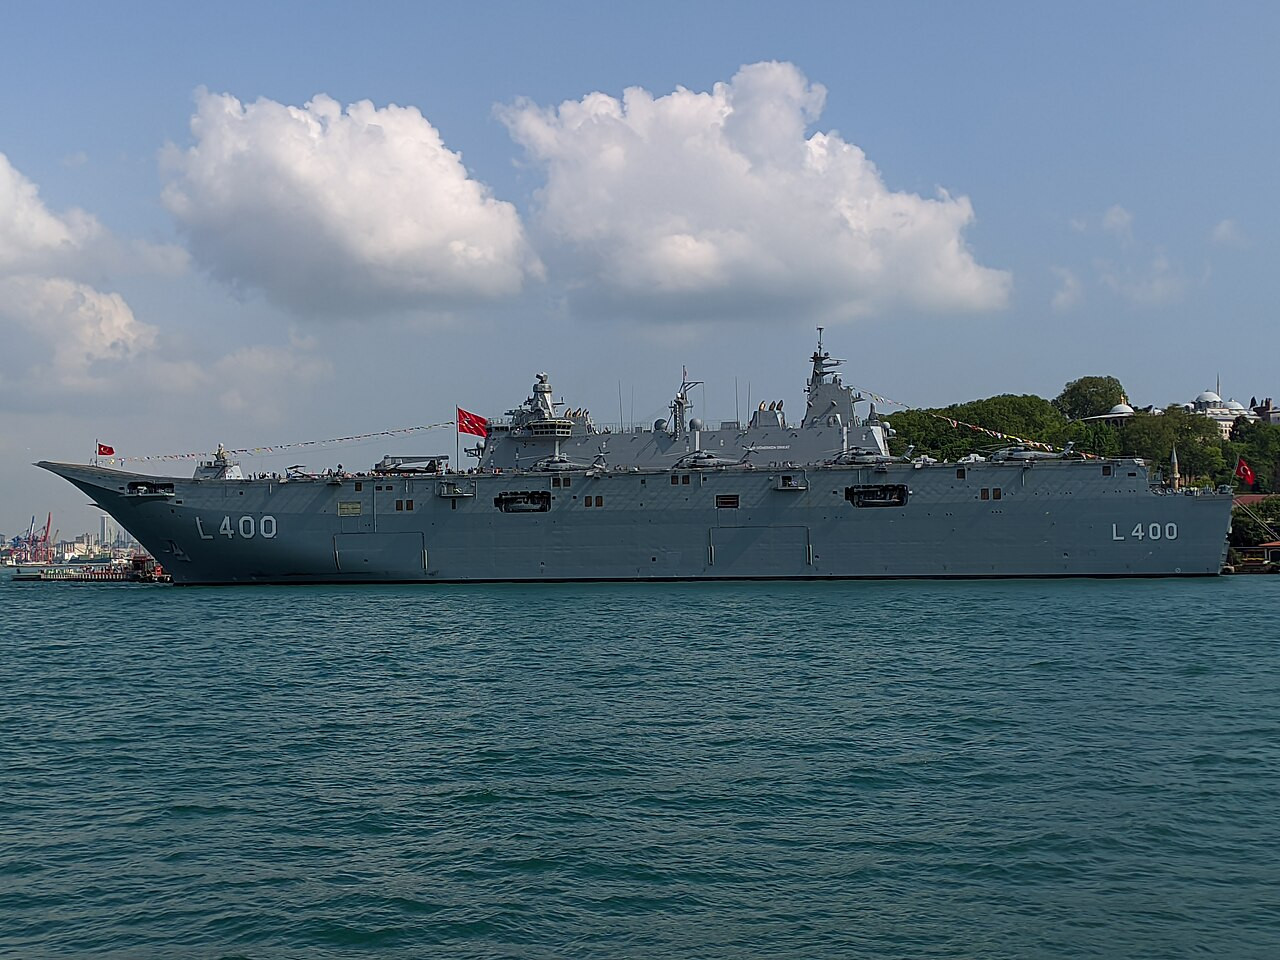 TCG Anadolu (L-400) a török haditengerészet partraszállást segítő hajója. Forrás: Wikipédia